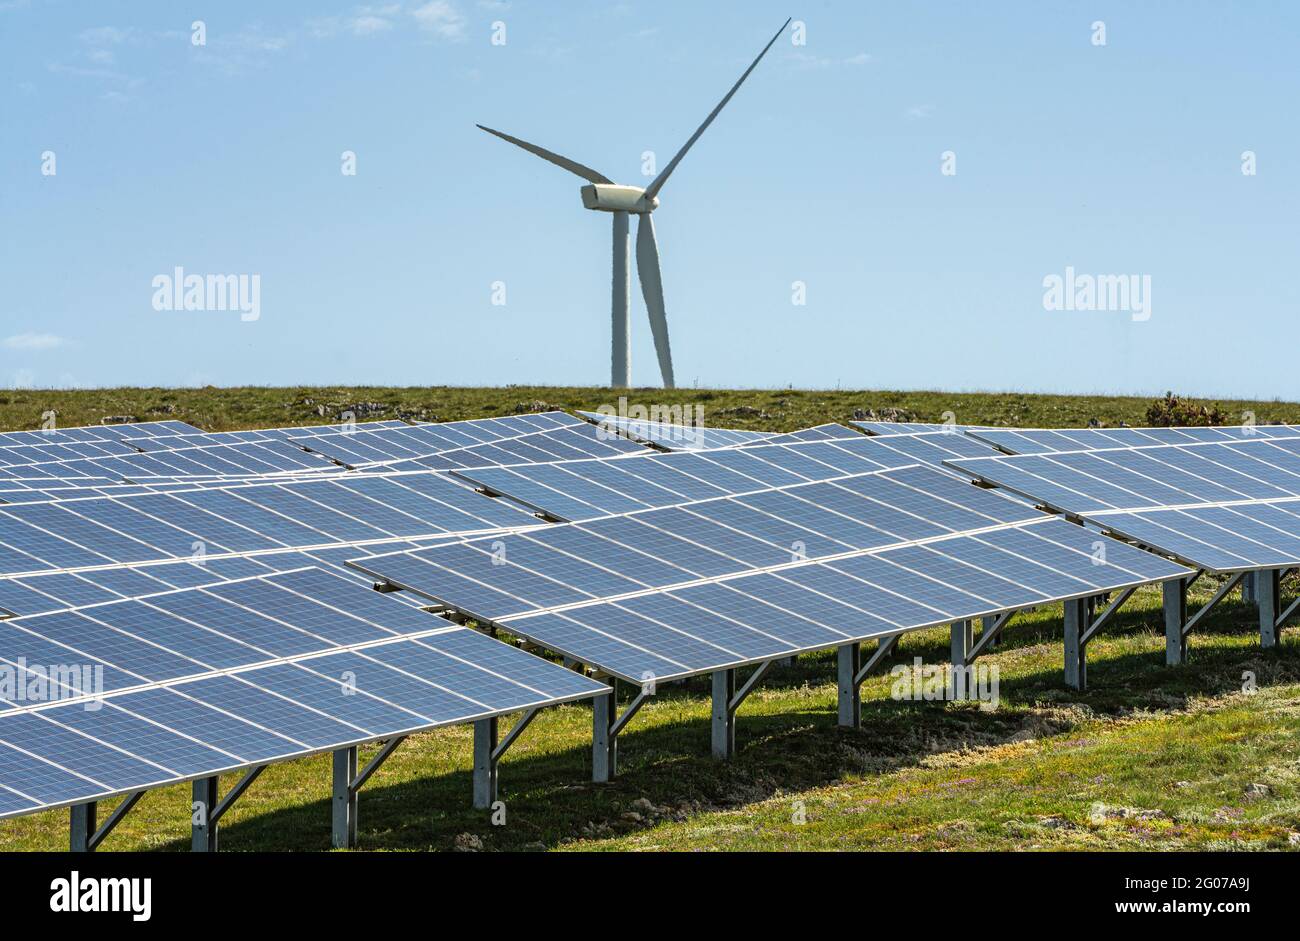 Pannelli solari e turbine eoliche per la produzione di energia rinnovabile e a basso inquinamento. Collarmele, provincia di l'Aquila, Abruzzo, Italia, Europa Foto Stock